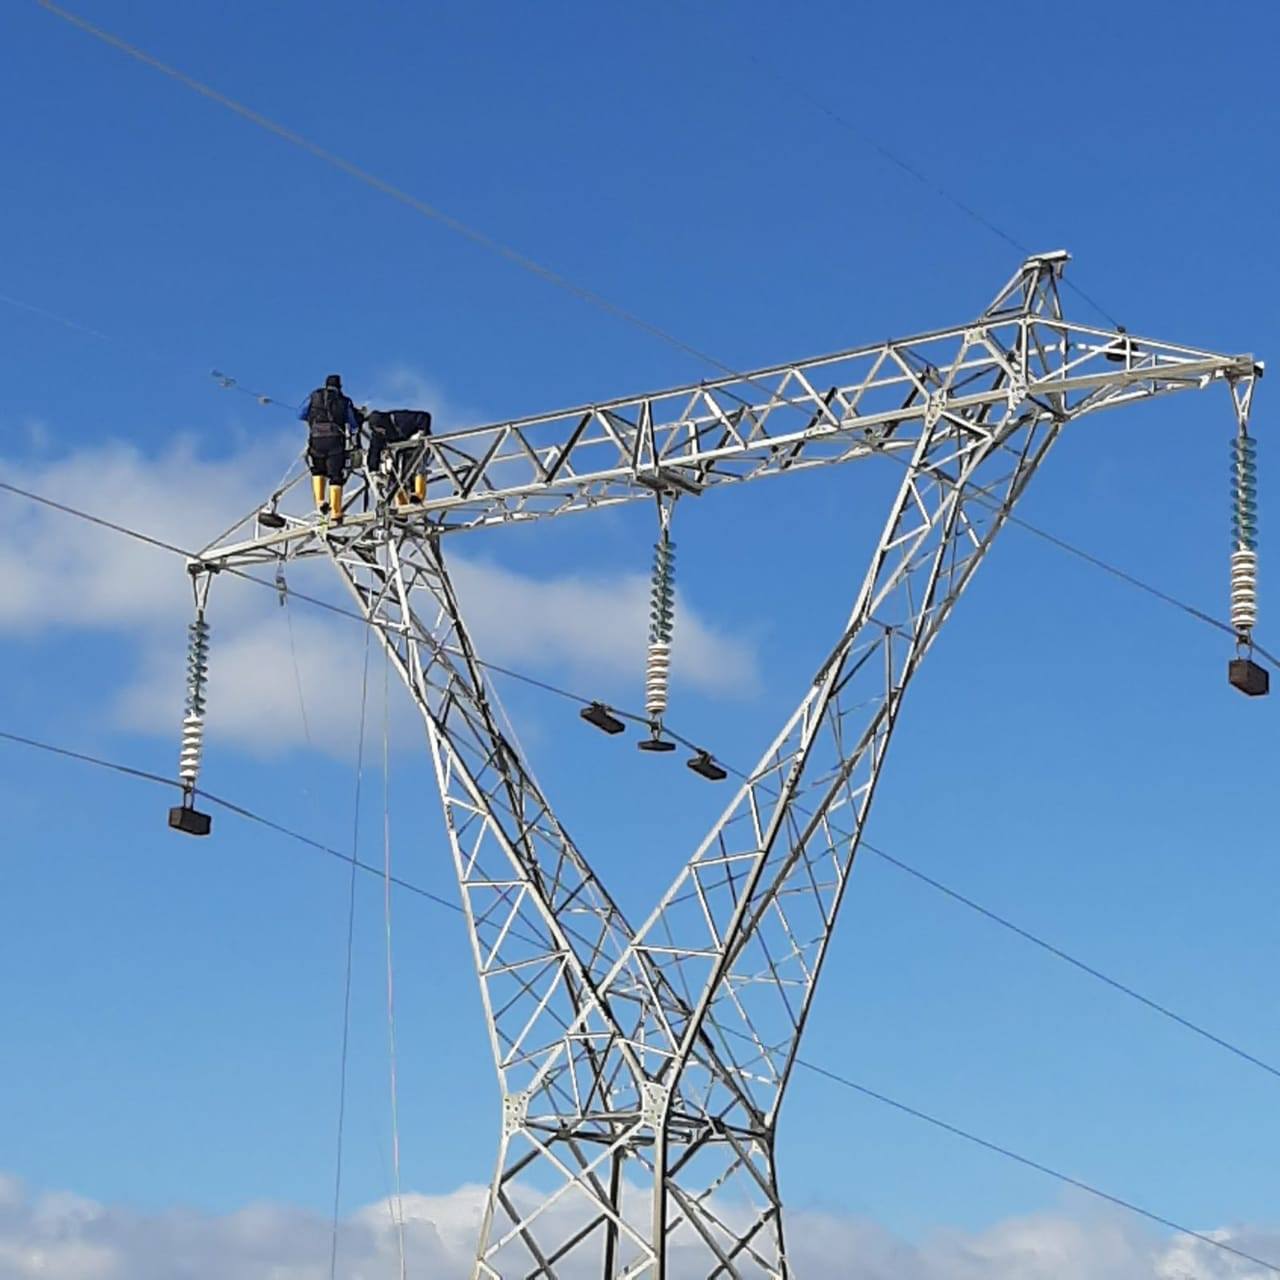 Σε κατάσταση ομηρίας το Δίκτυο Μεταφοράς Ηλεκτρικής Ενέργειας